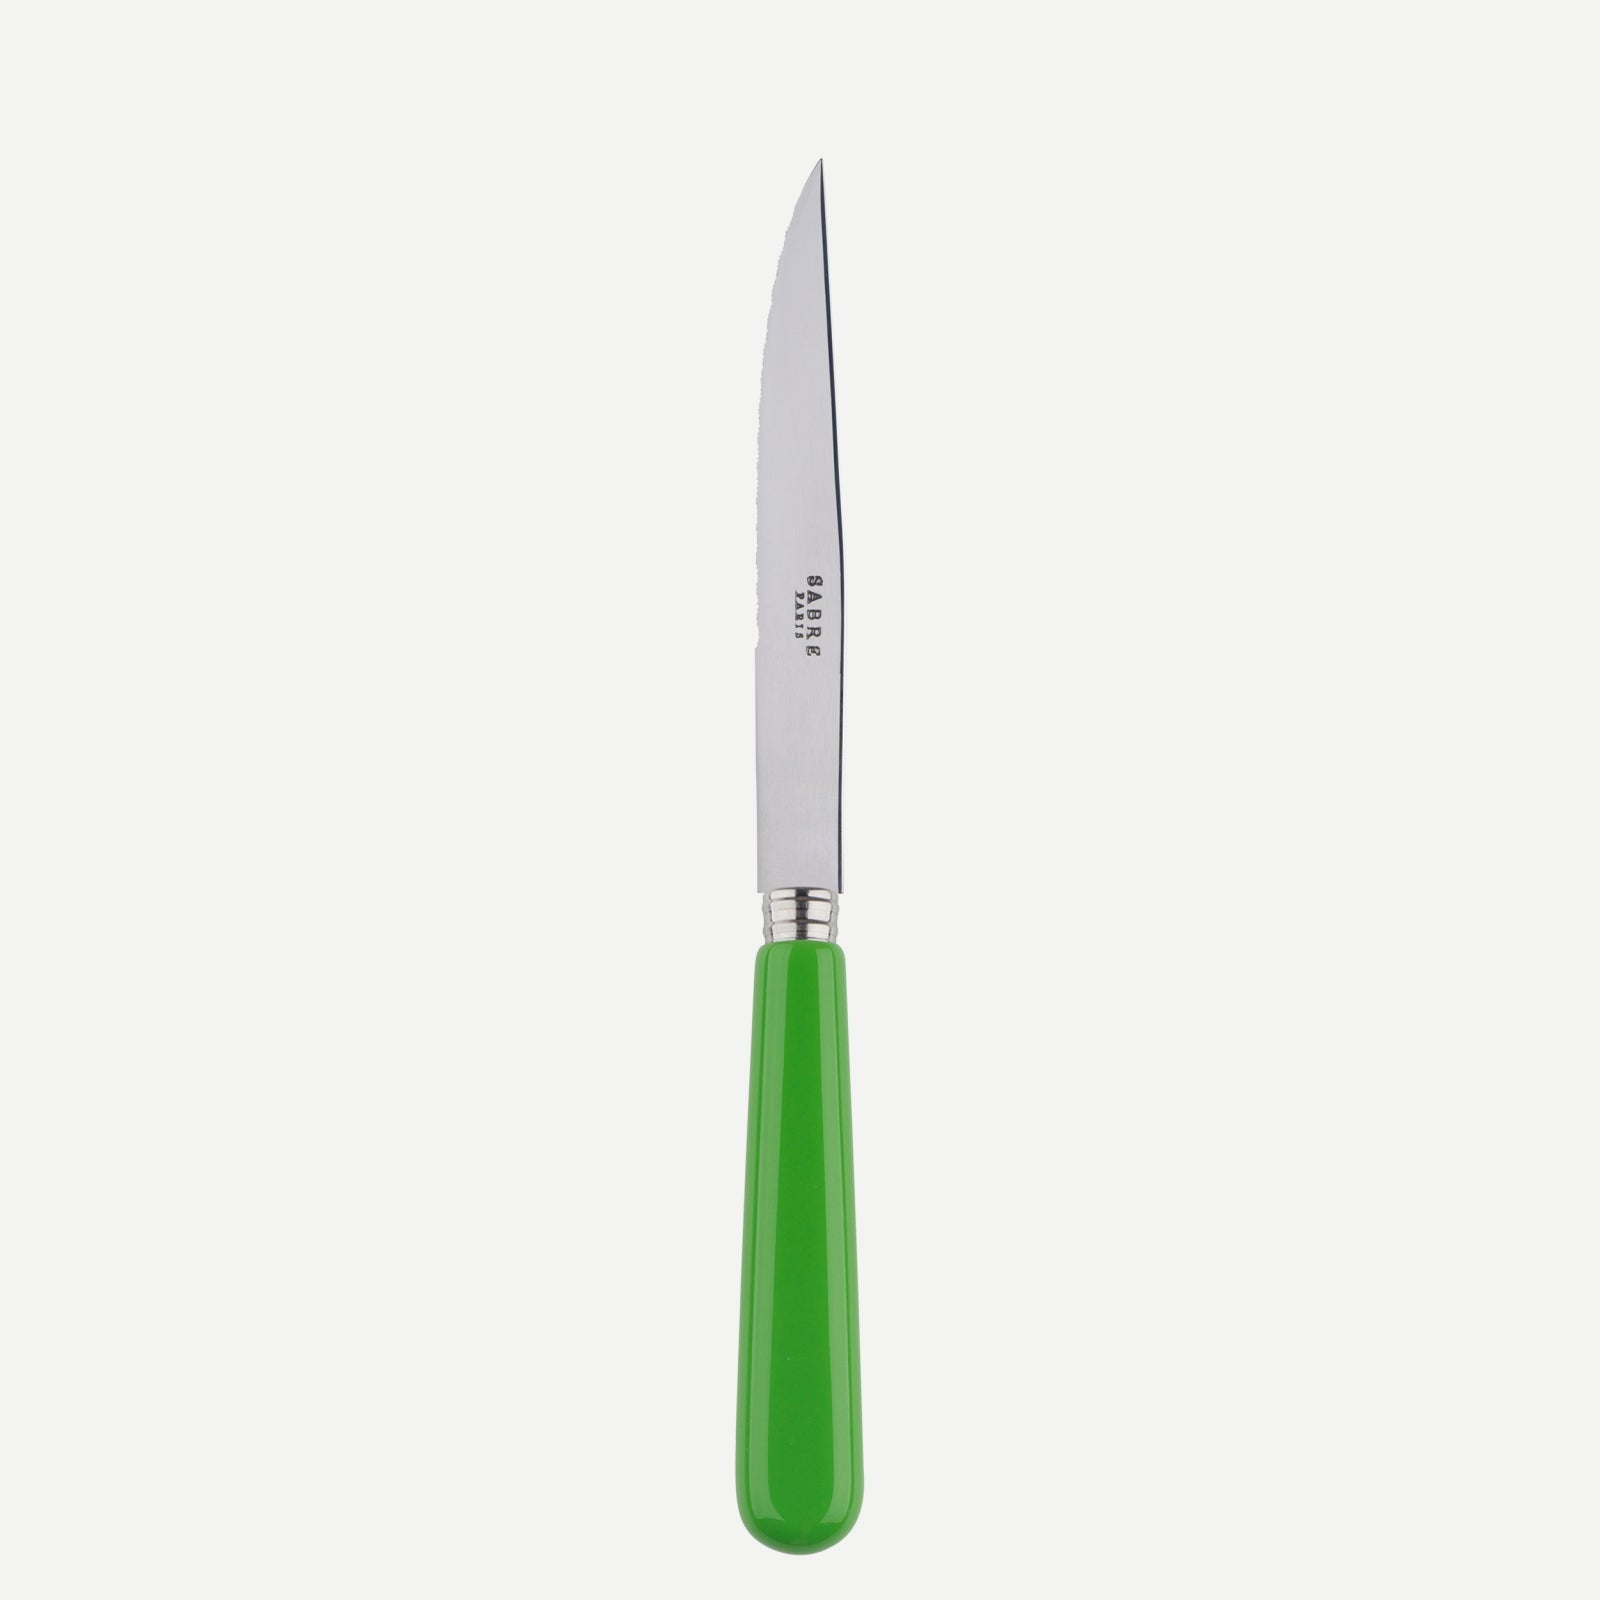 Steack knife - Pop unis - Streaming green